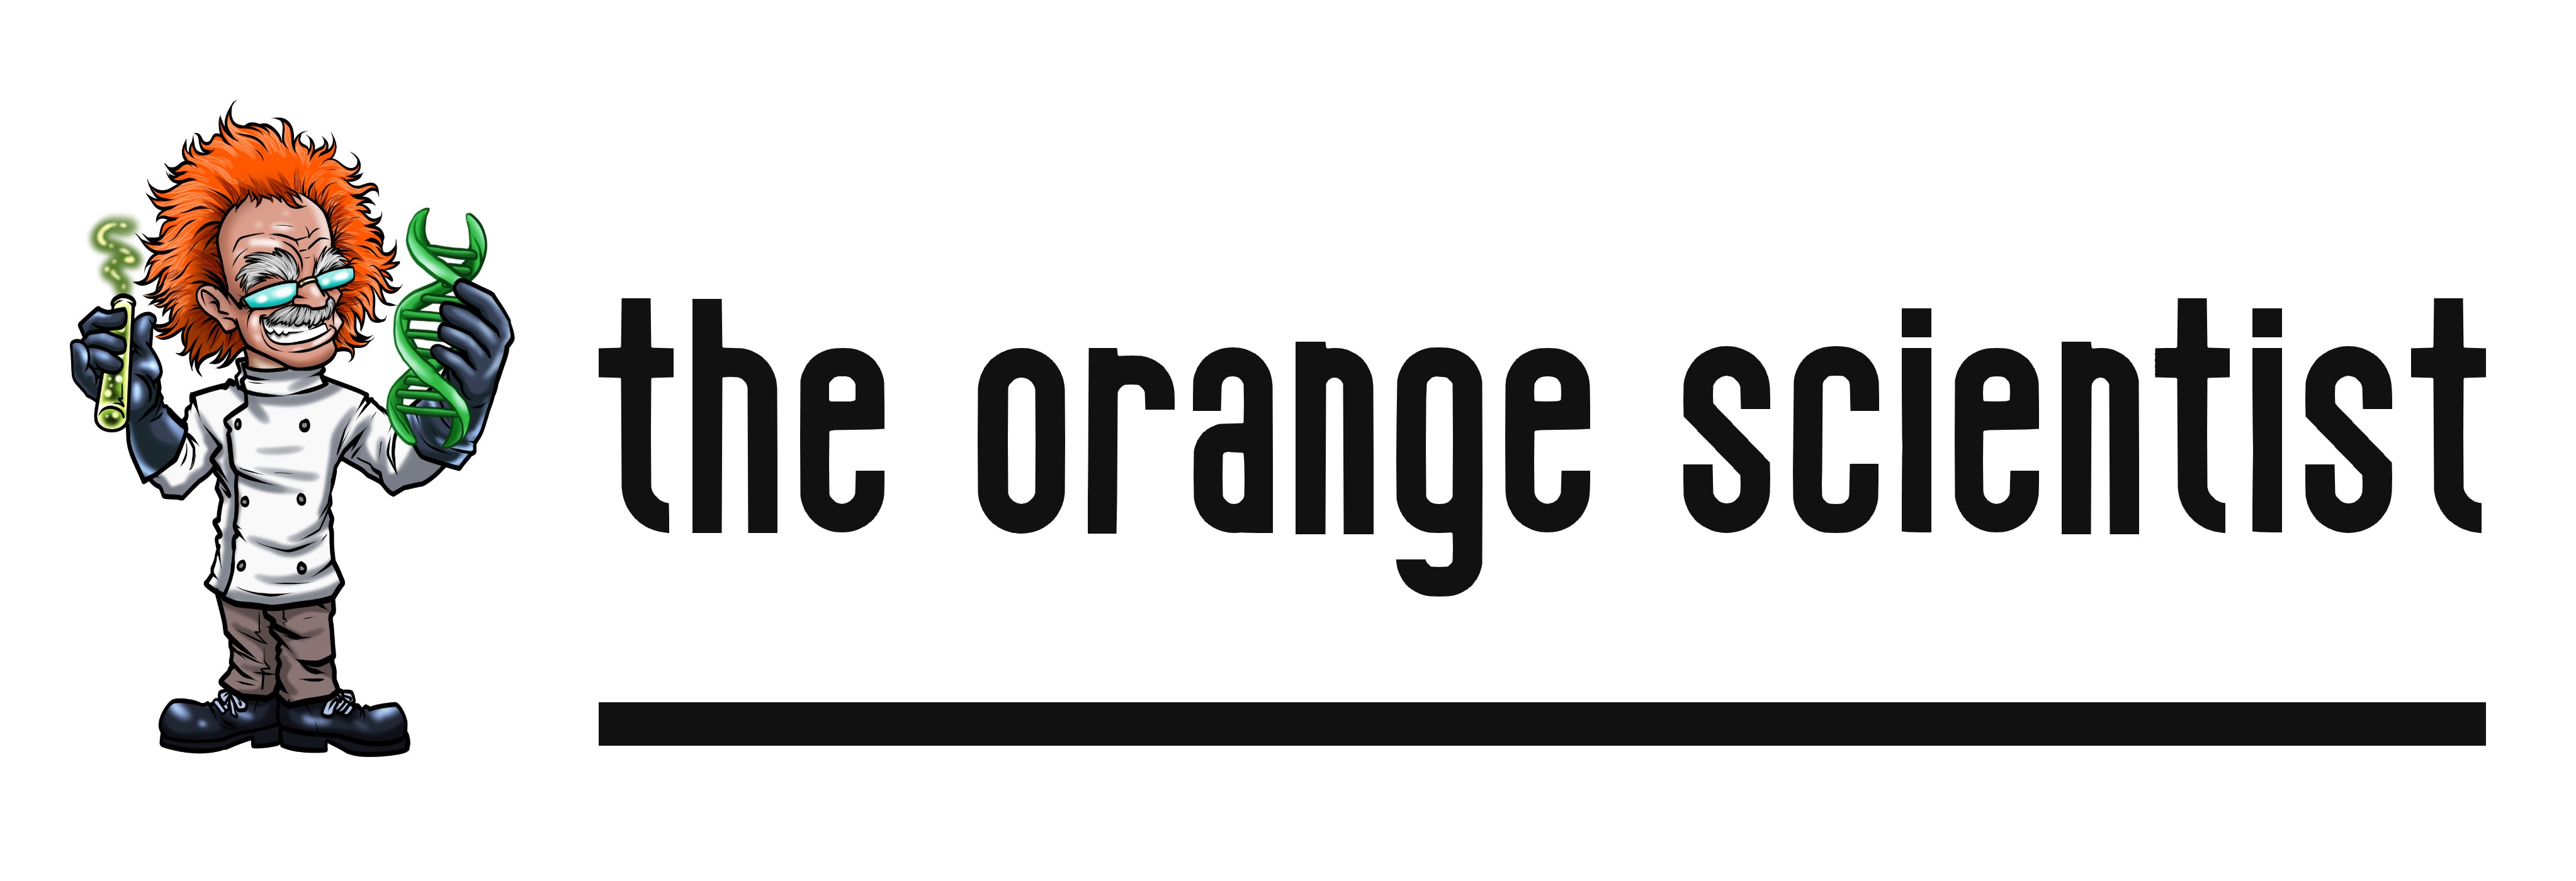 The Orange Scientist